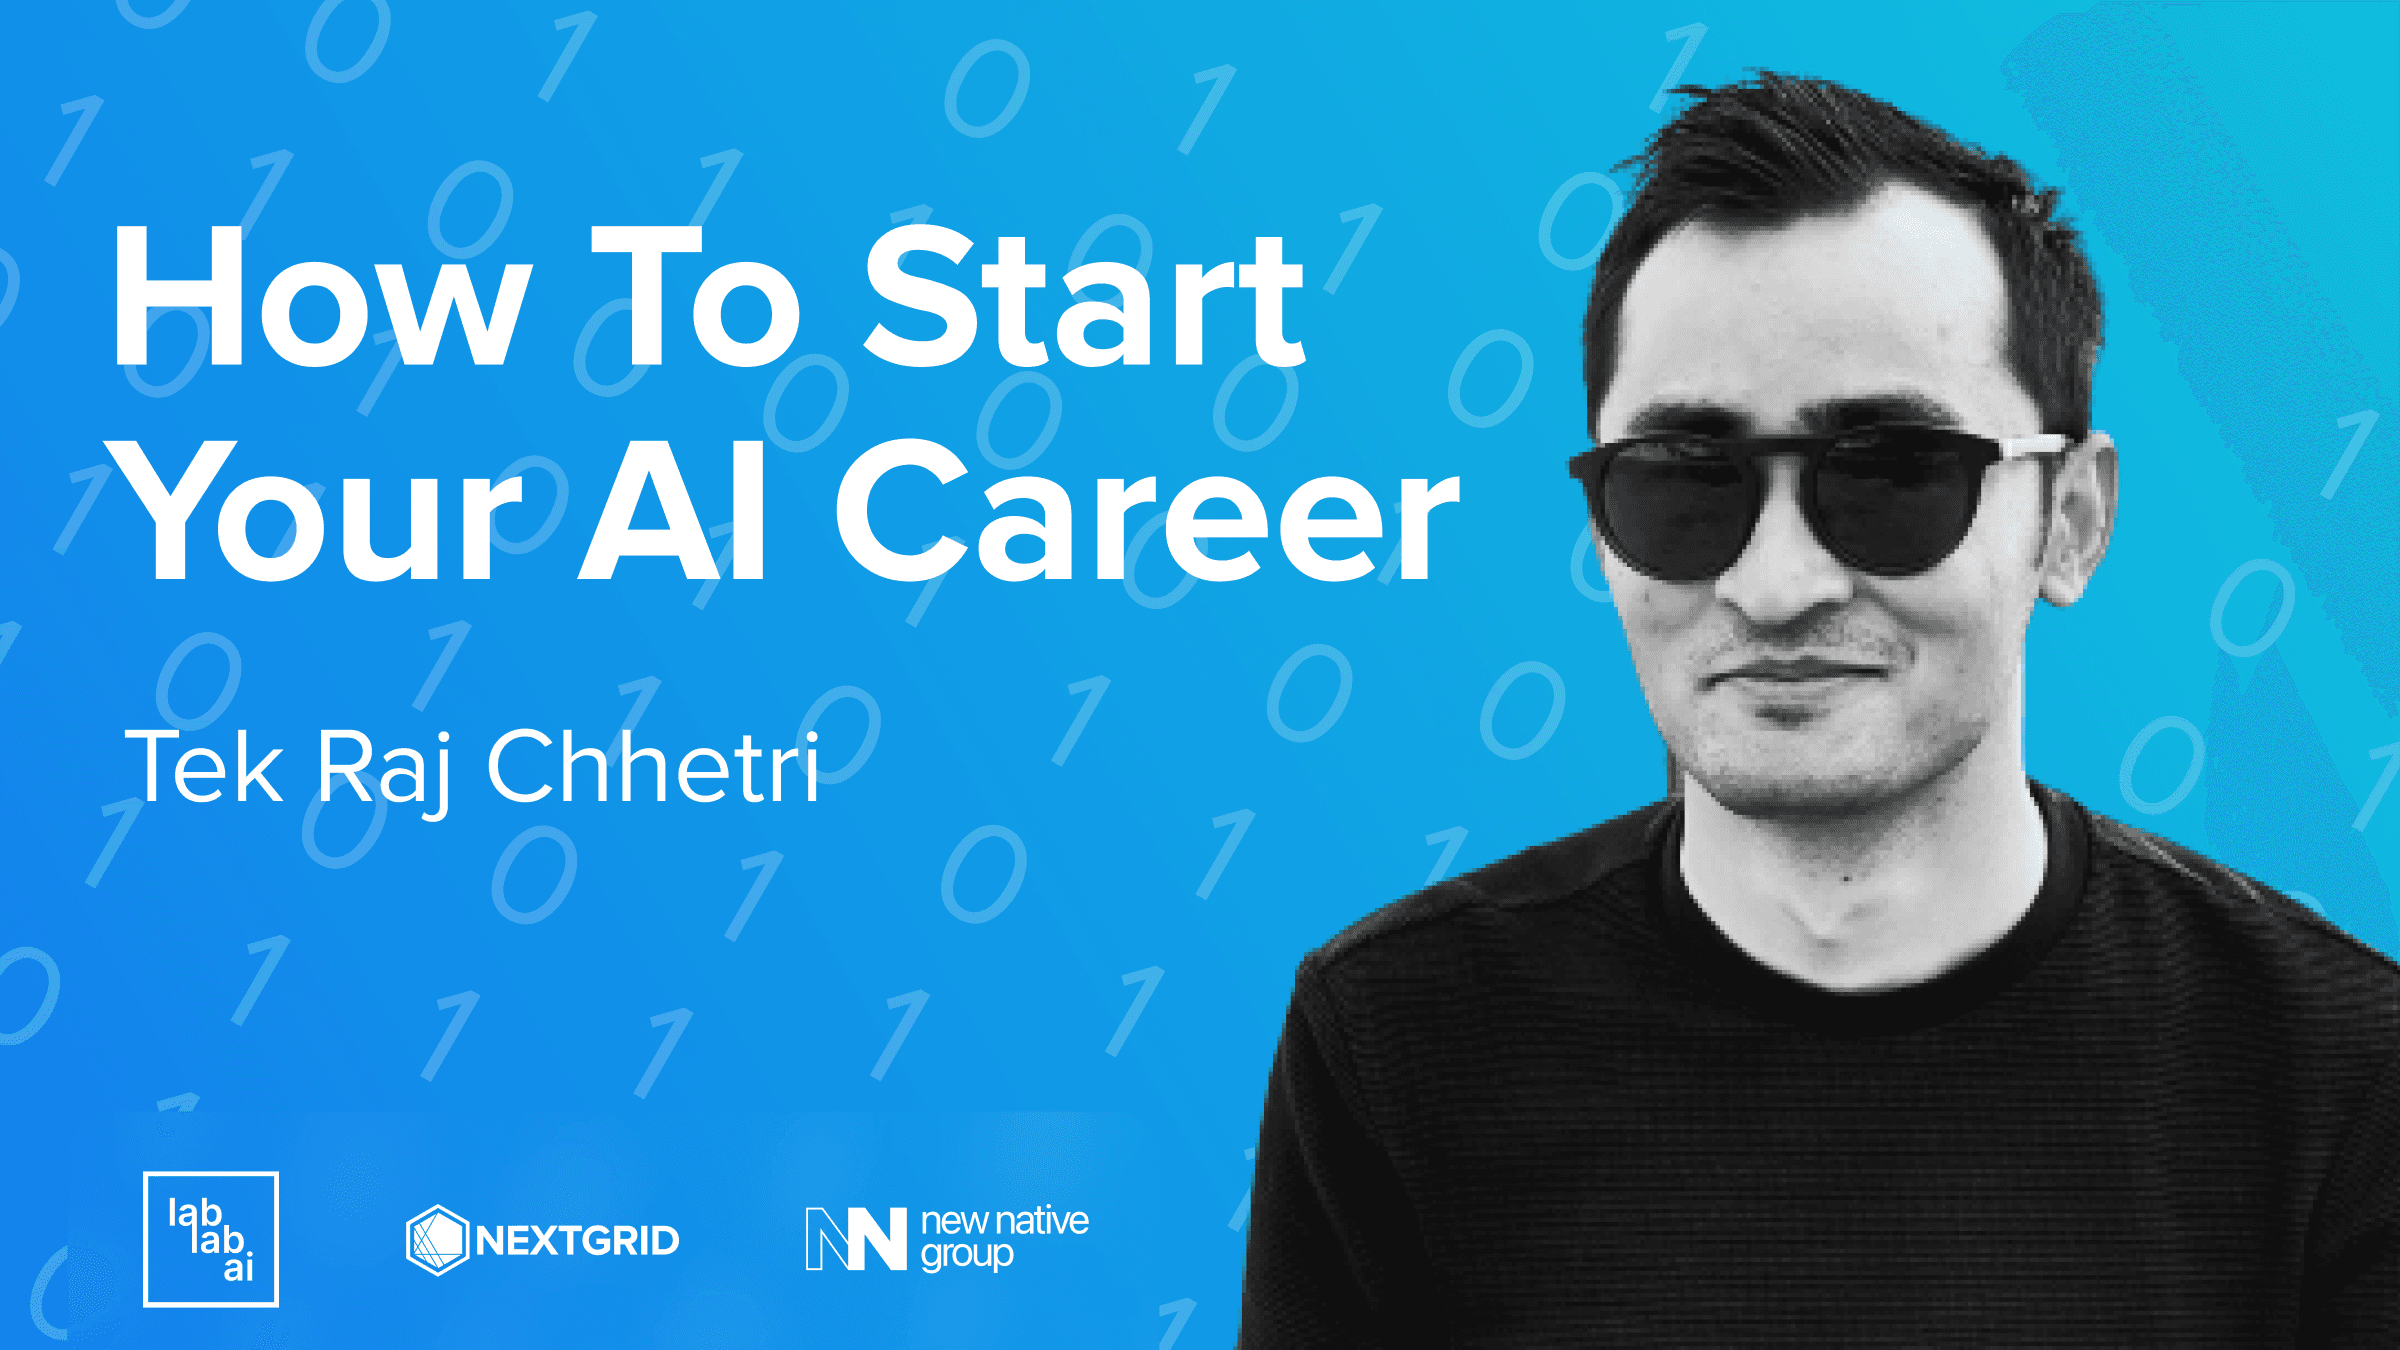 Tek Raj Chhetri: How To Start Your AI Career event thumbnail